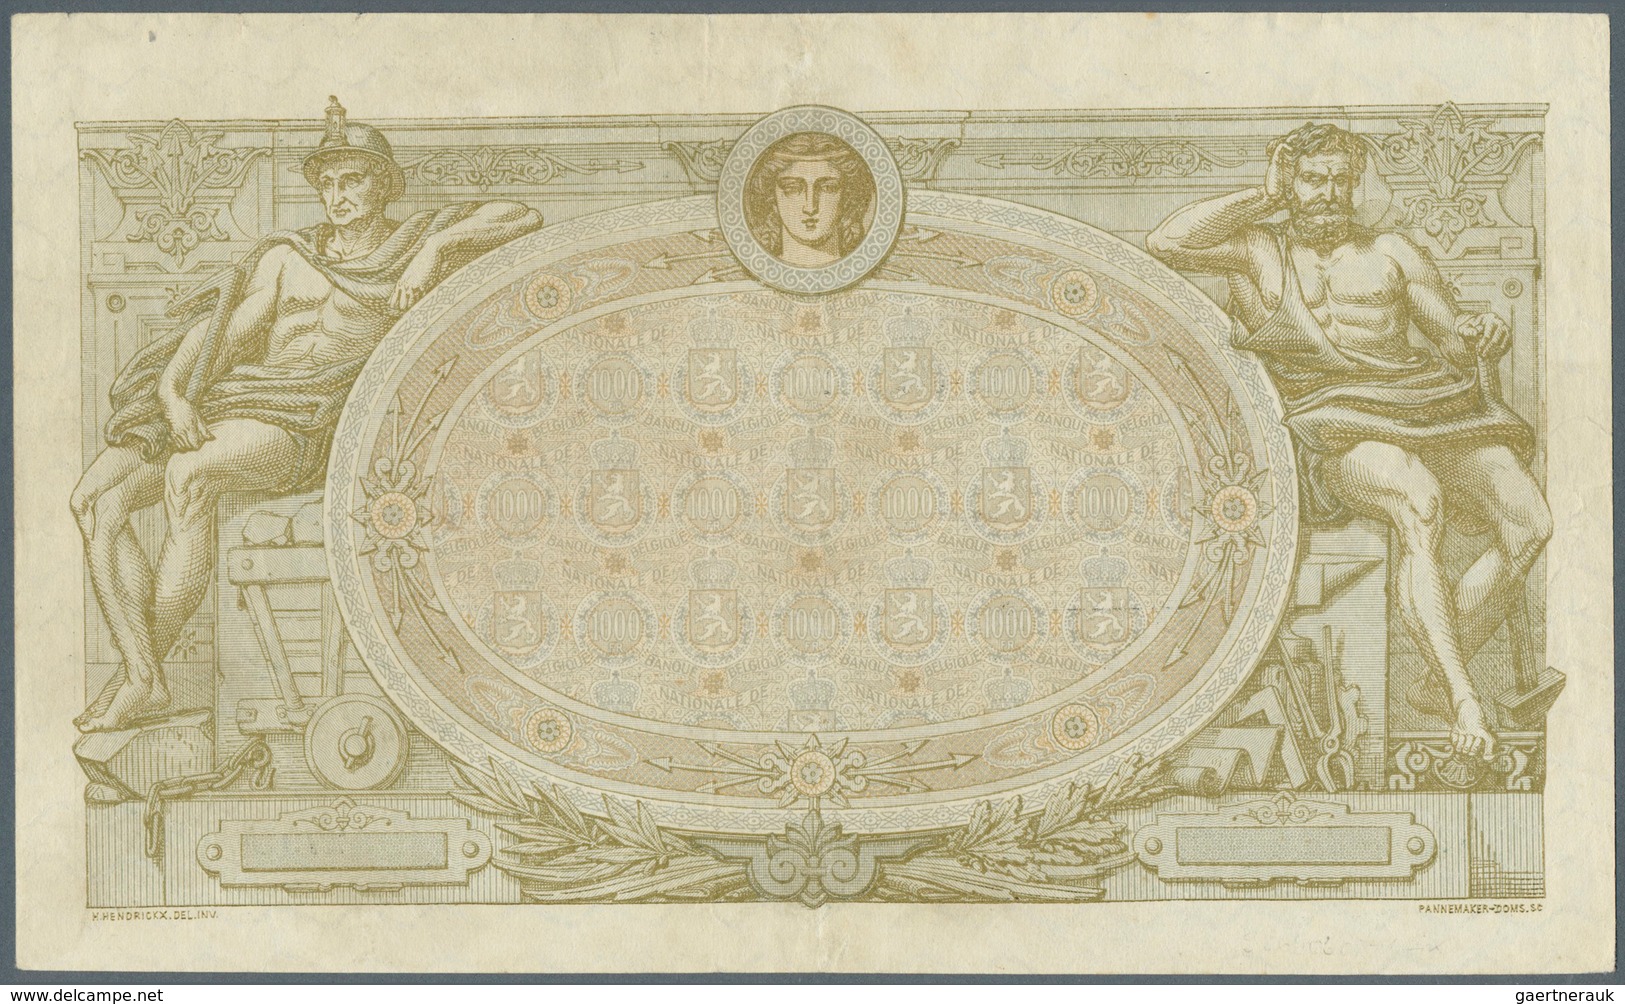 01120 Belgium / Belgien: 1000 Francs 1919 P. 73, Rare Note, 2 Center Folds And Light Creases At Borders, A - [ 1] …-1830 : Voor Onafhankelijkheid